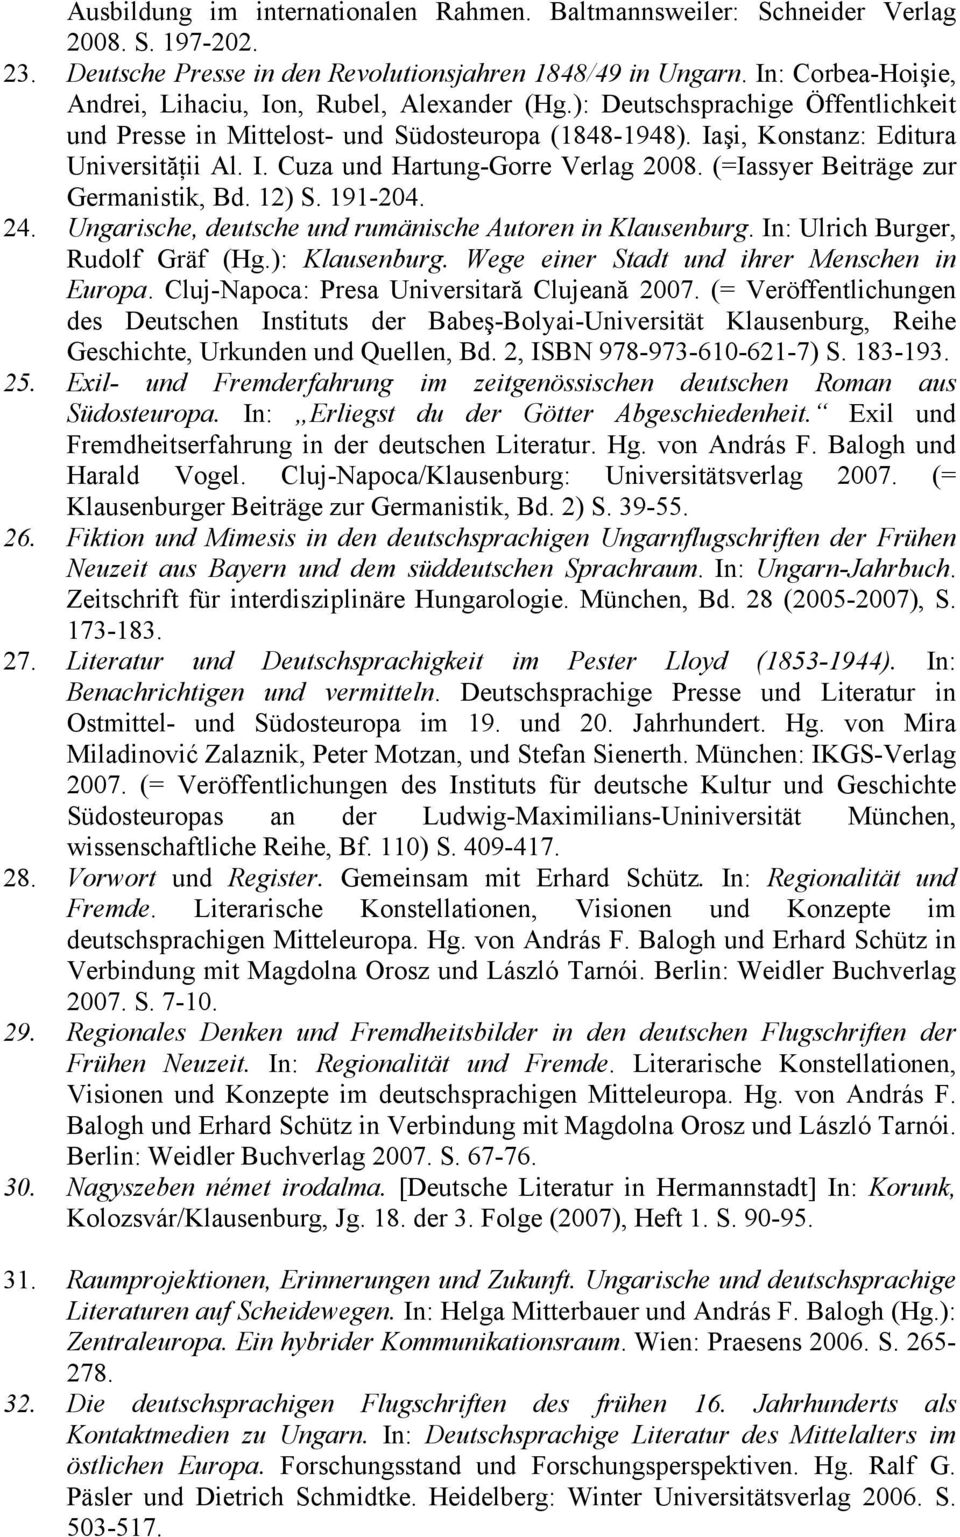 (=Iassyer Beiträge zur Germanistik, Bd. 12) S. 191-204. 24. Ungarische, deutsche und rumänische Autoren in Klausenburg. In: Ulrich Burger, Rudolf Gräf (Hg.): Klausenburg.